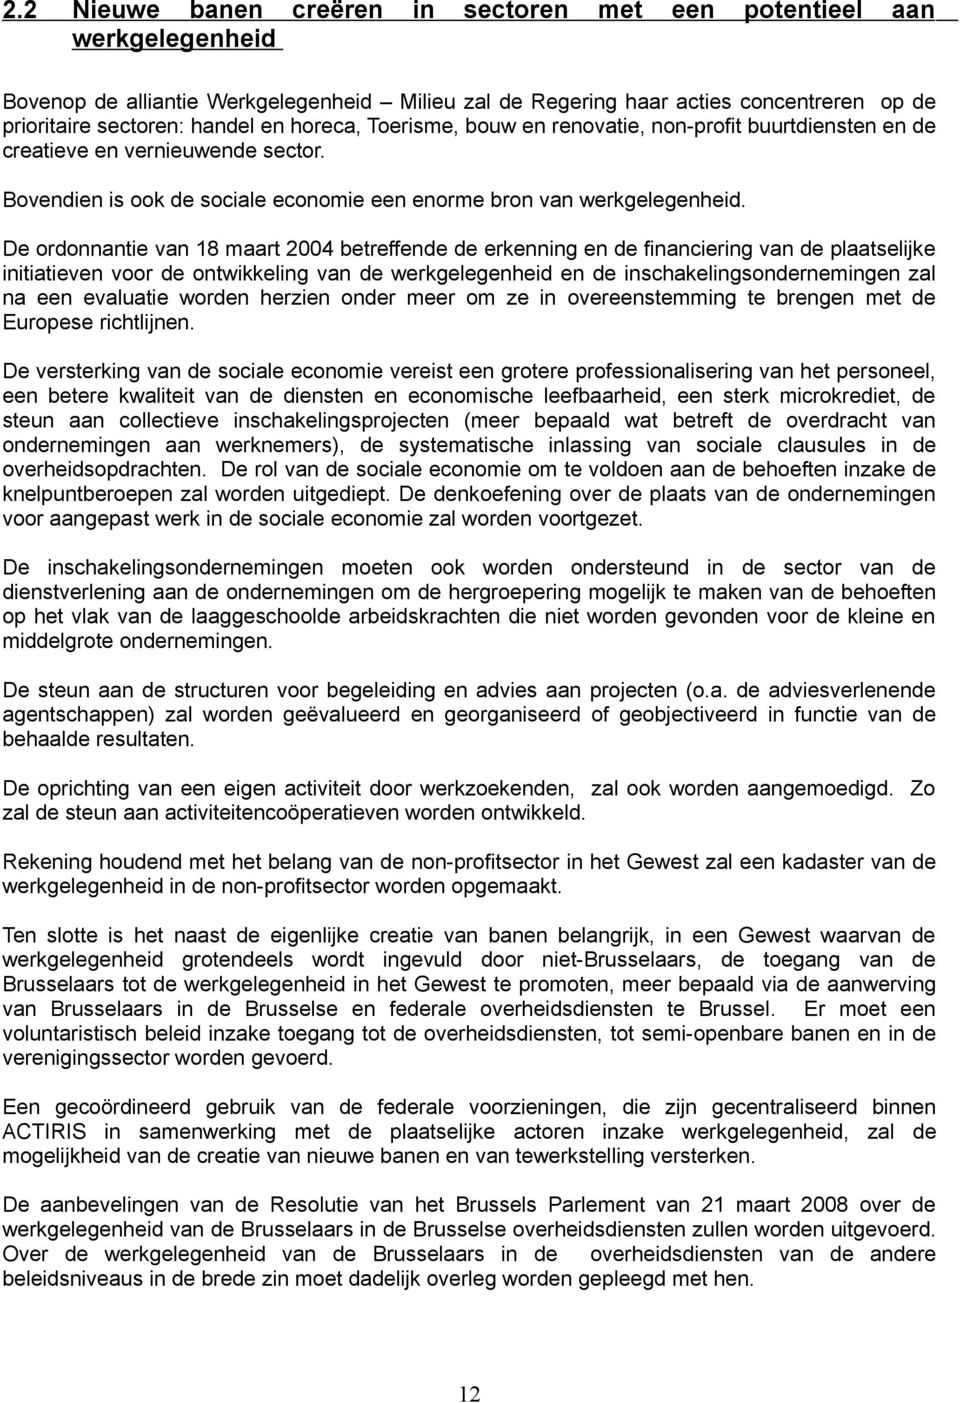 De ordonnantie van 18 maart 2004 betreffende de erkenning en de financiering van de plaatselijke initiatieven voor de ontwikkeling van de werkgelegenheid en de inschakelingsondernemingen zal na een